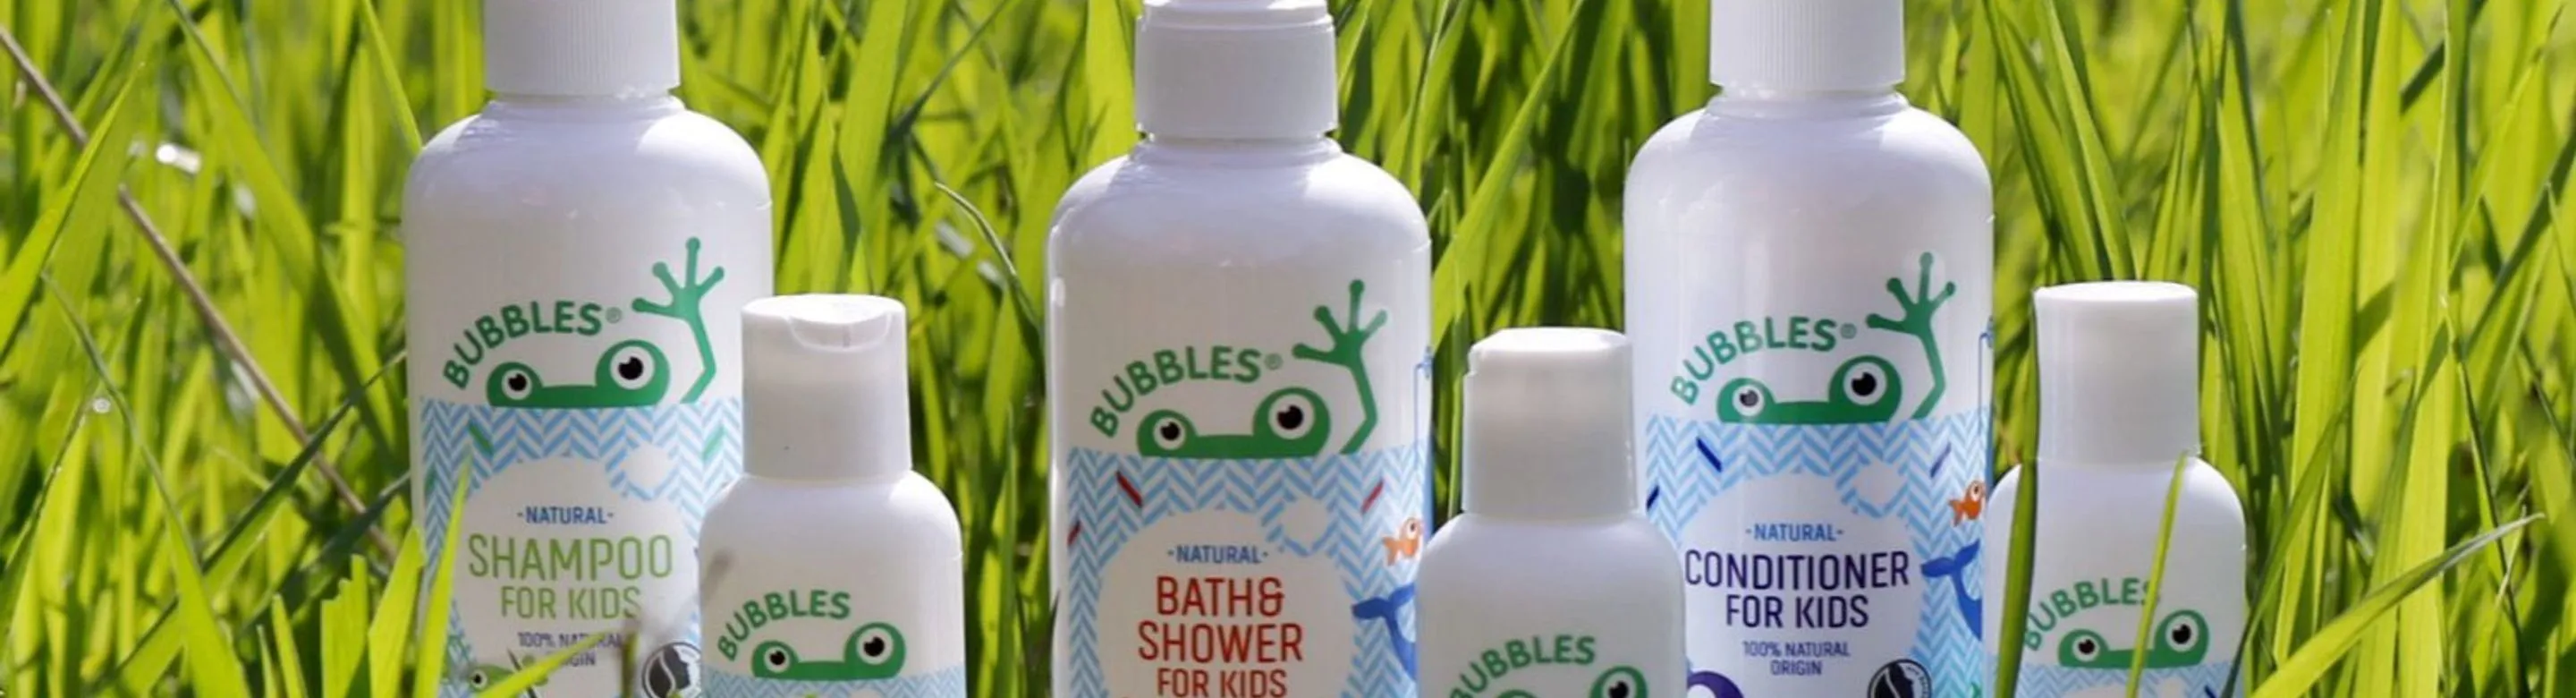 Bubbles Natural Bodycare